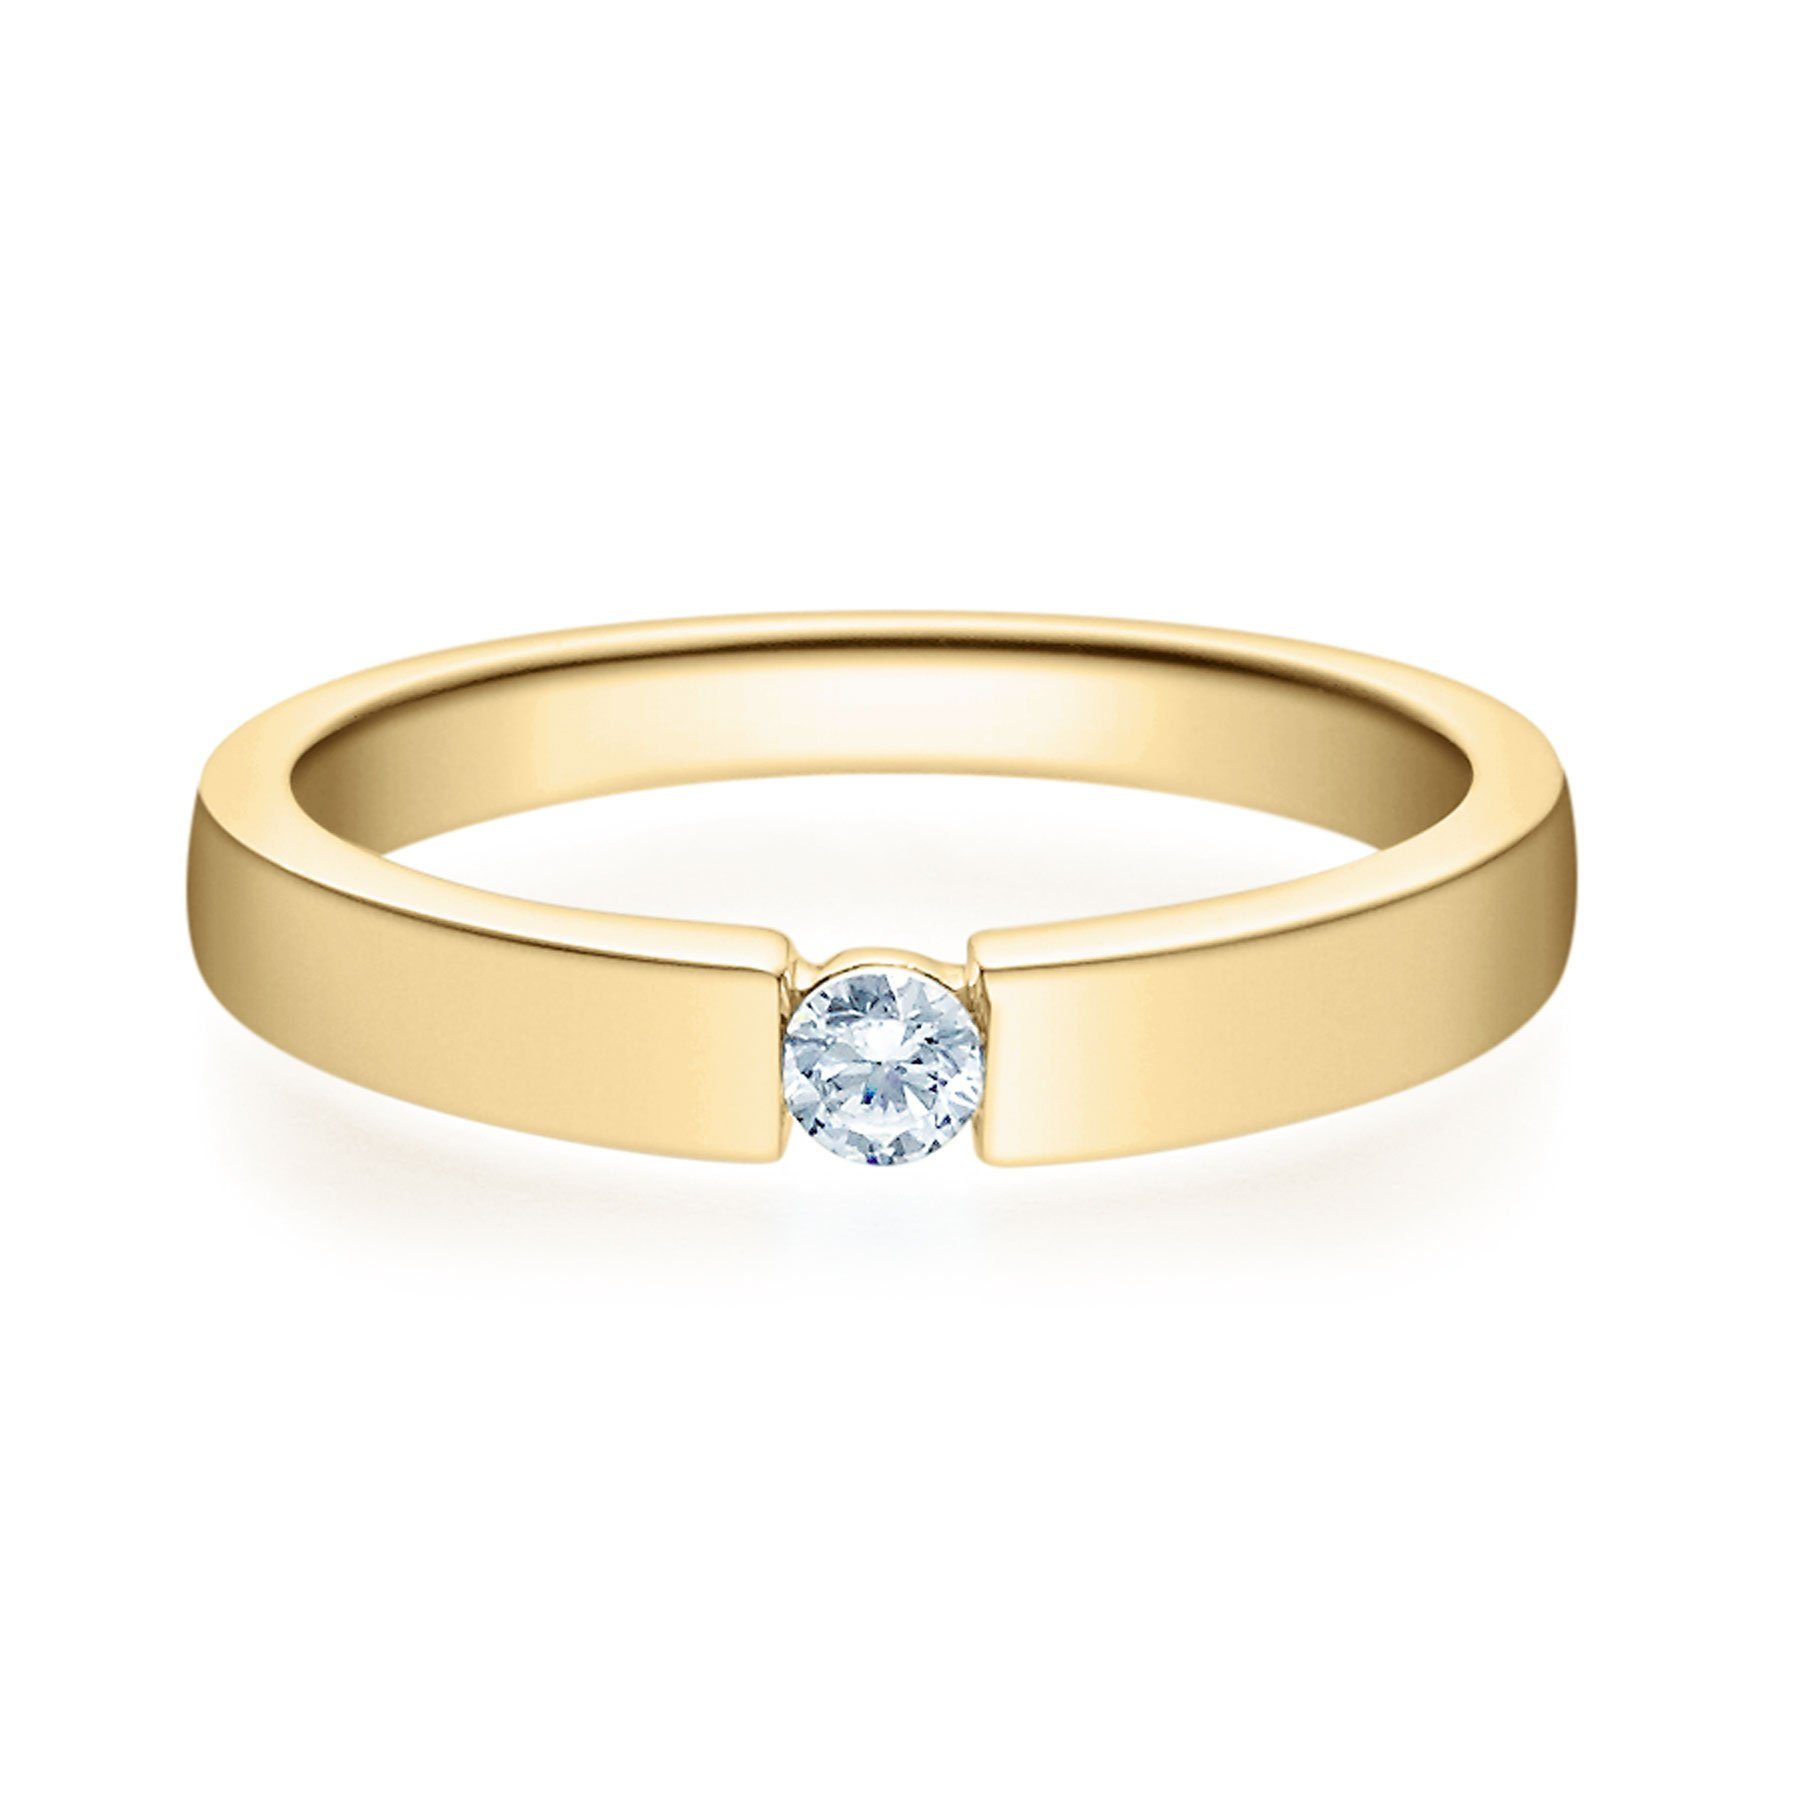 Stella-Jewellery Solitärring 375er Gelbgold Verlobungsring mit Brillant - Gr.54 (inkl. Etui), mit Brillant 0,05ct. - Poliert